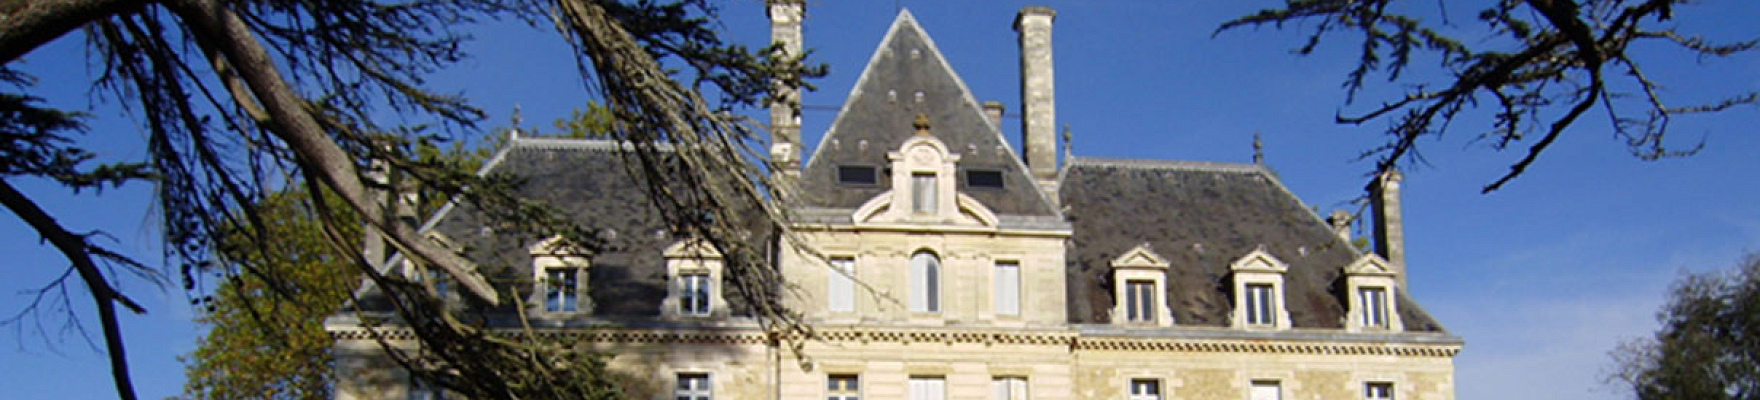 Château Respide Médeville